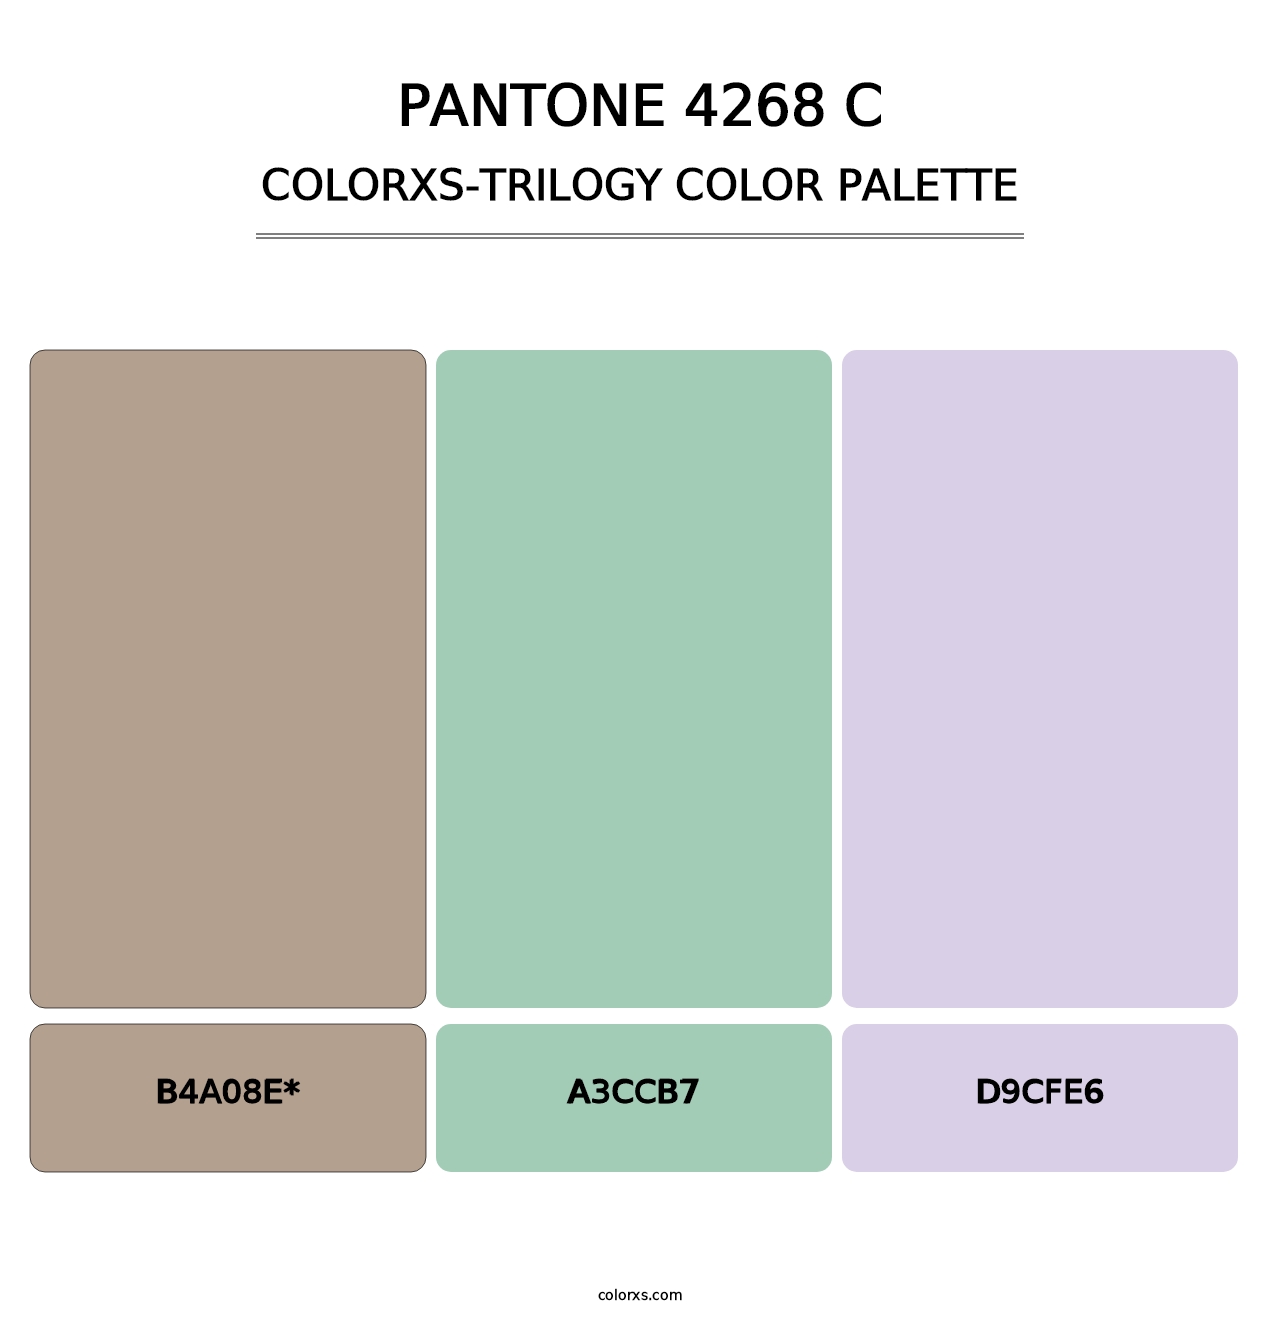 PANTONE 4268 C - Colorxs Trilogy Palette